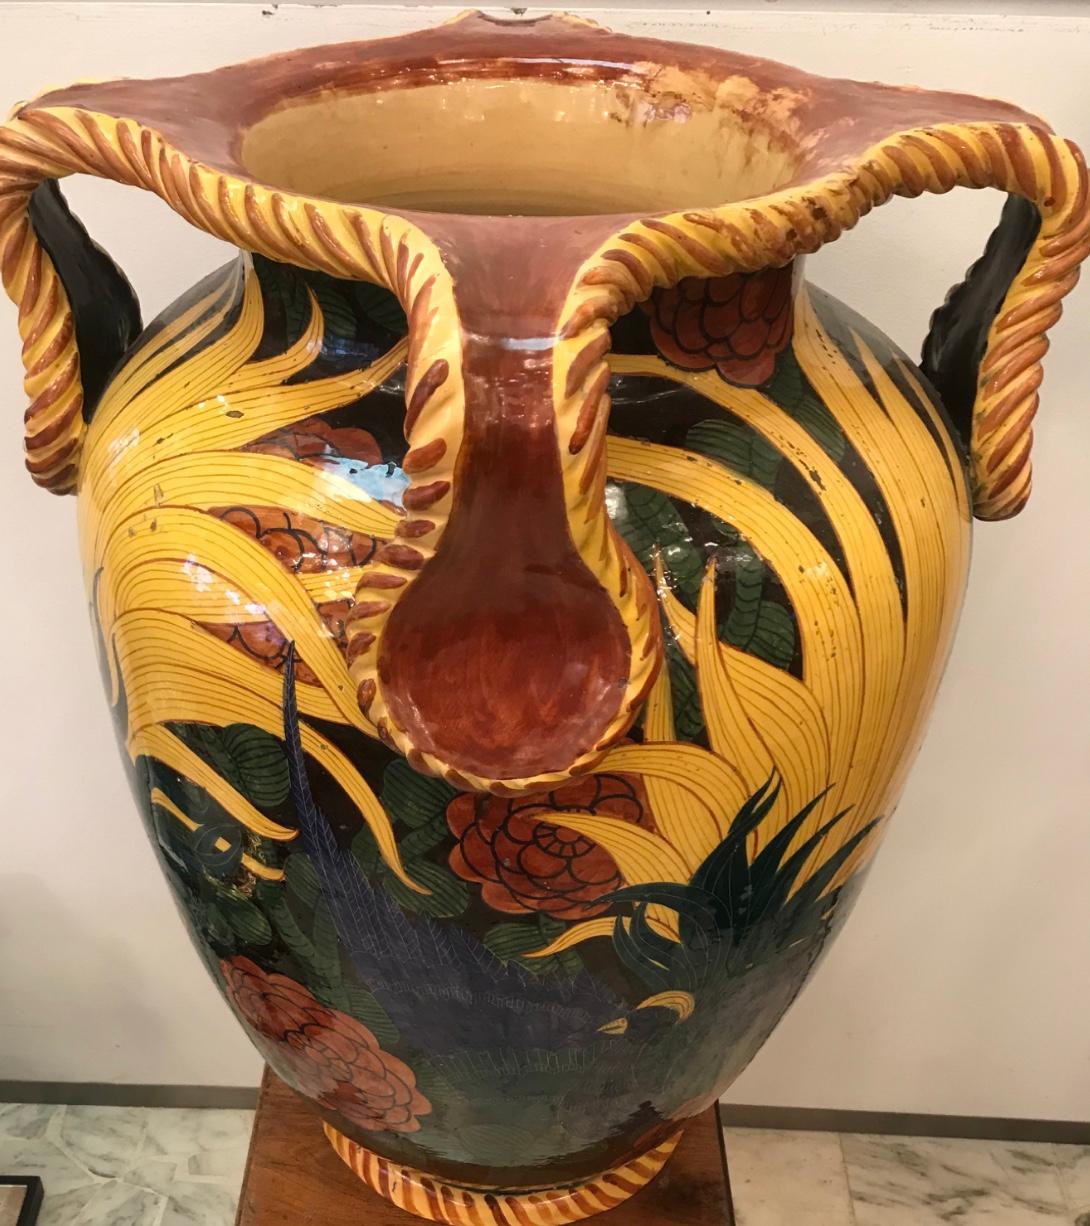 the original pottery albisola